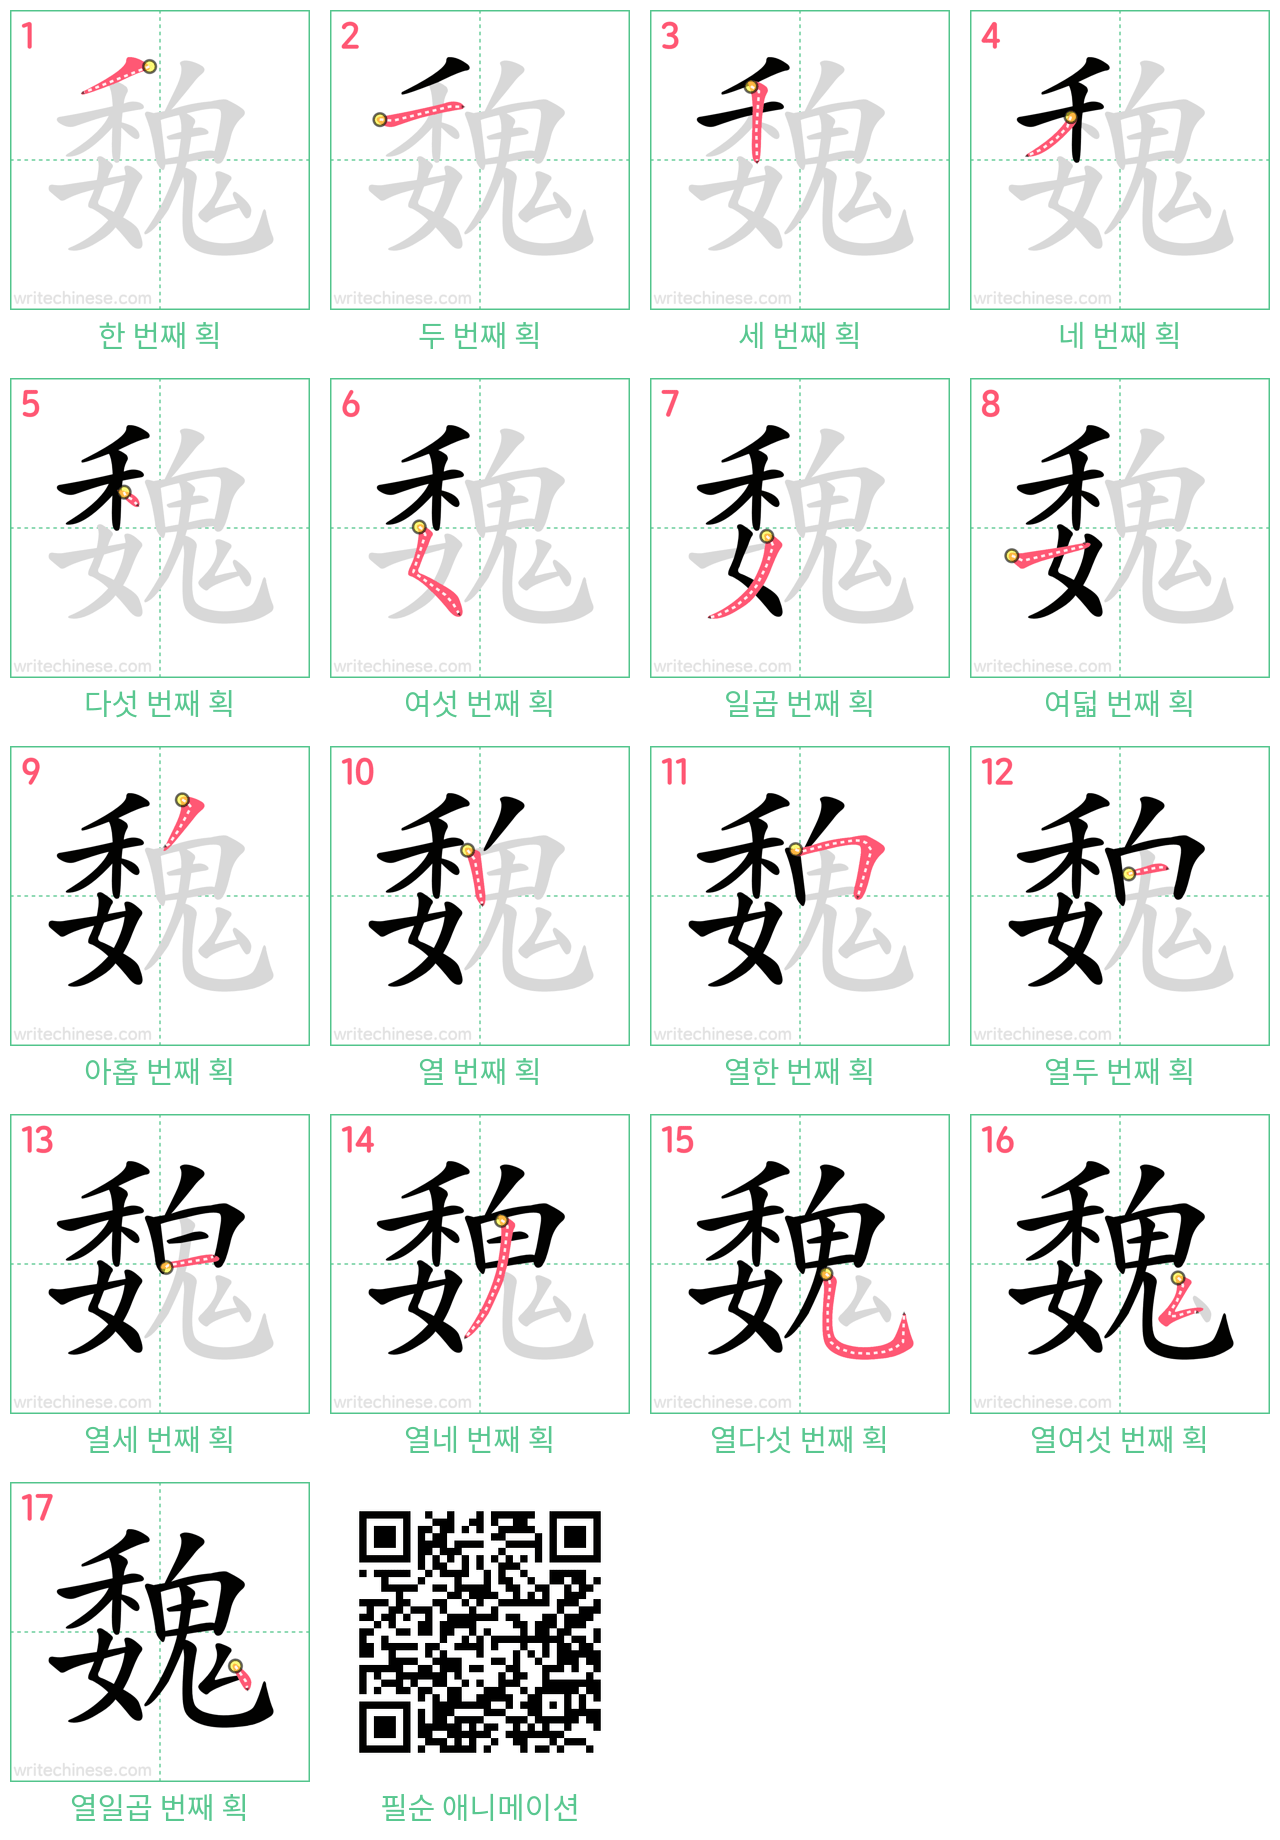 魏 step-by-step stroke order diagrams